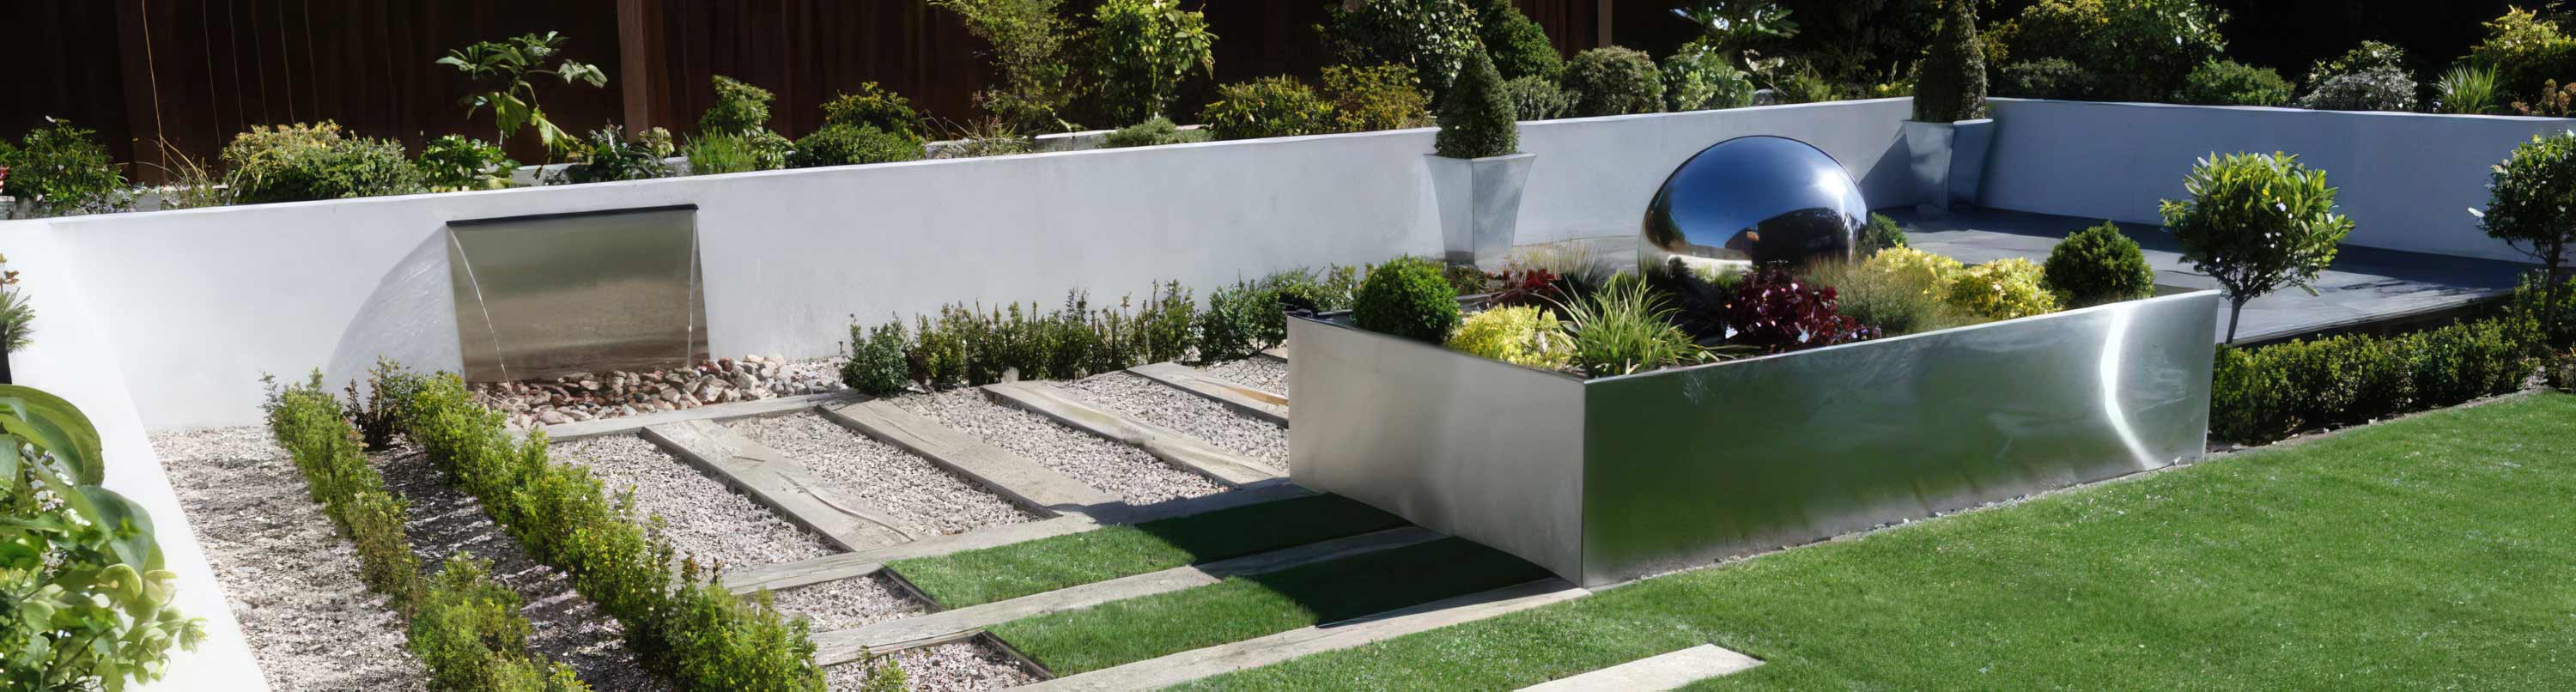 landscope garden design - Chelmsford Essex - slide 3